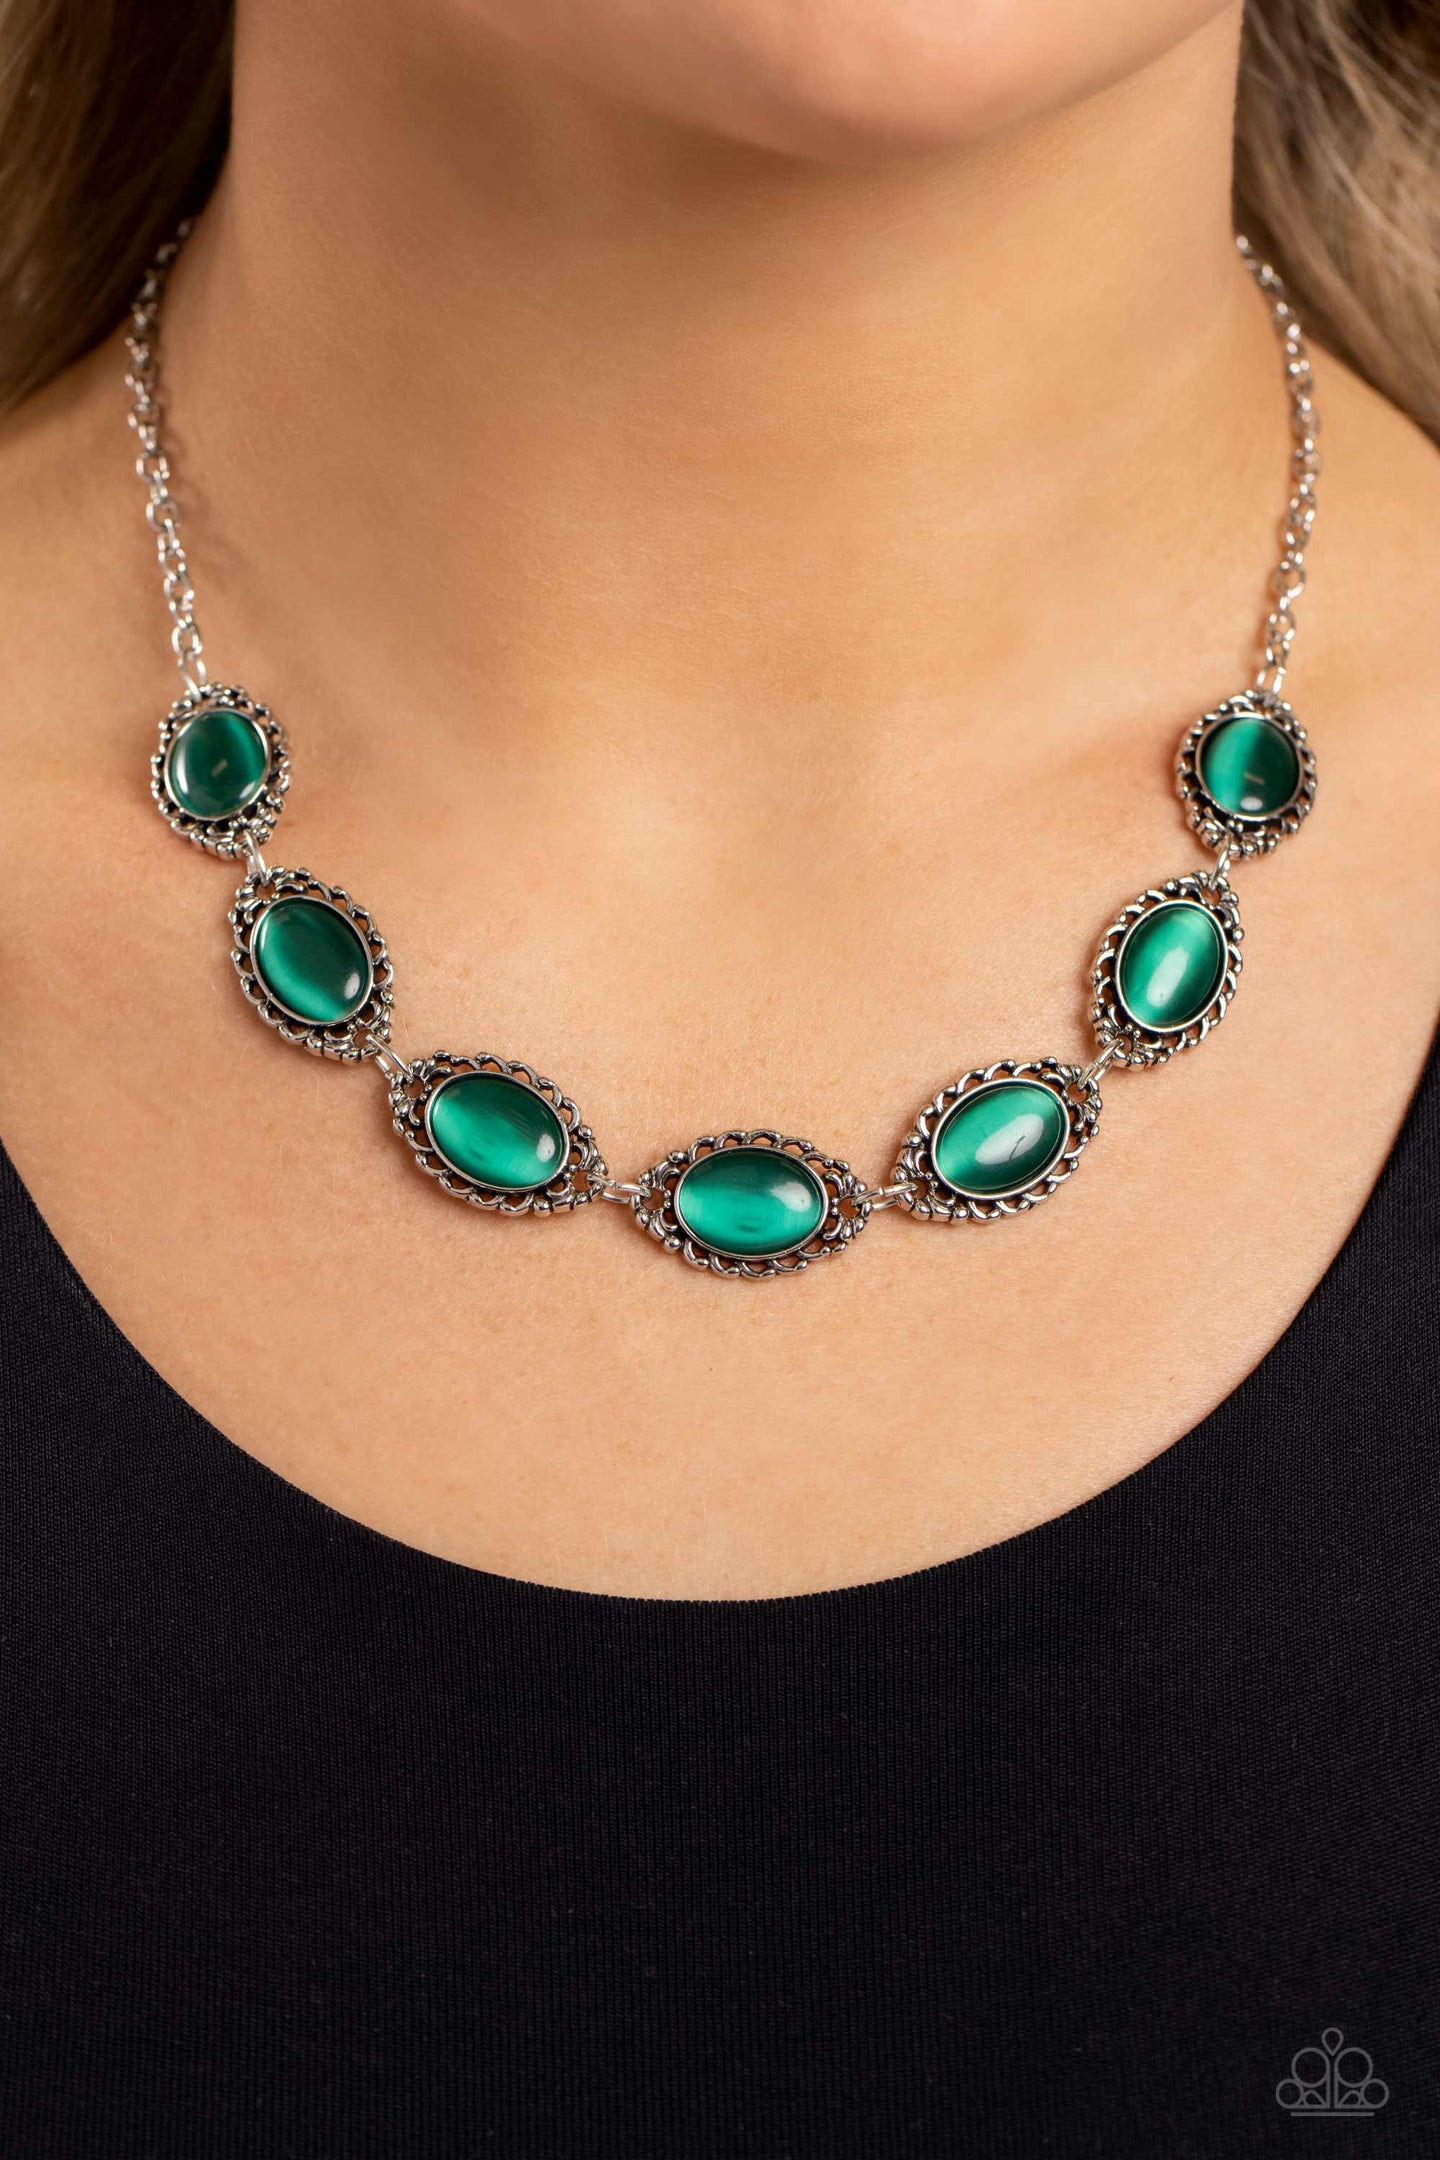 Framed in France - Green necklace